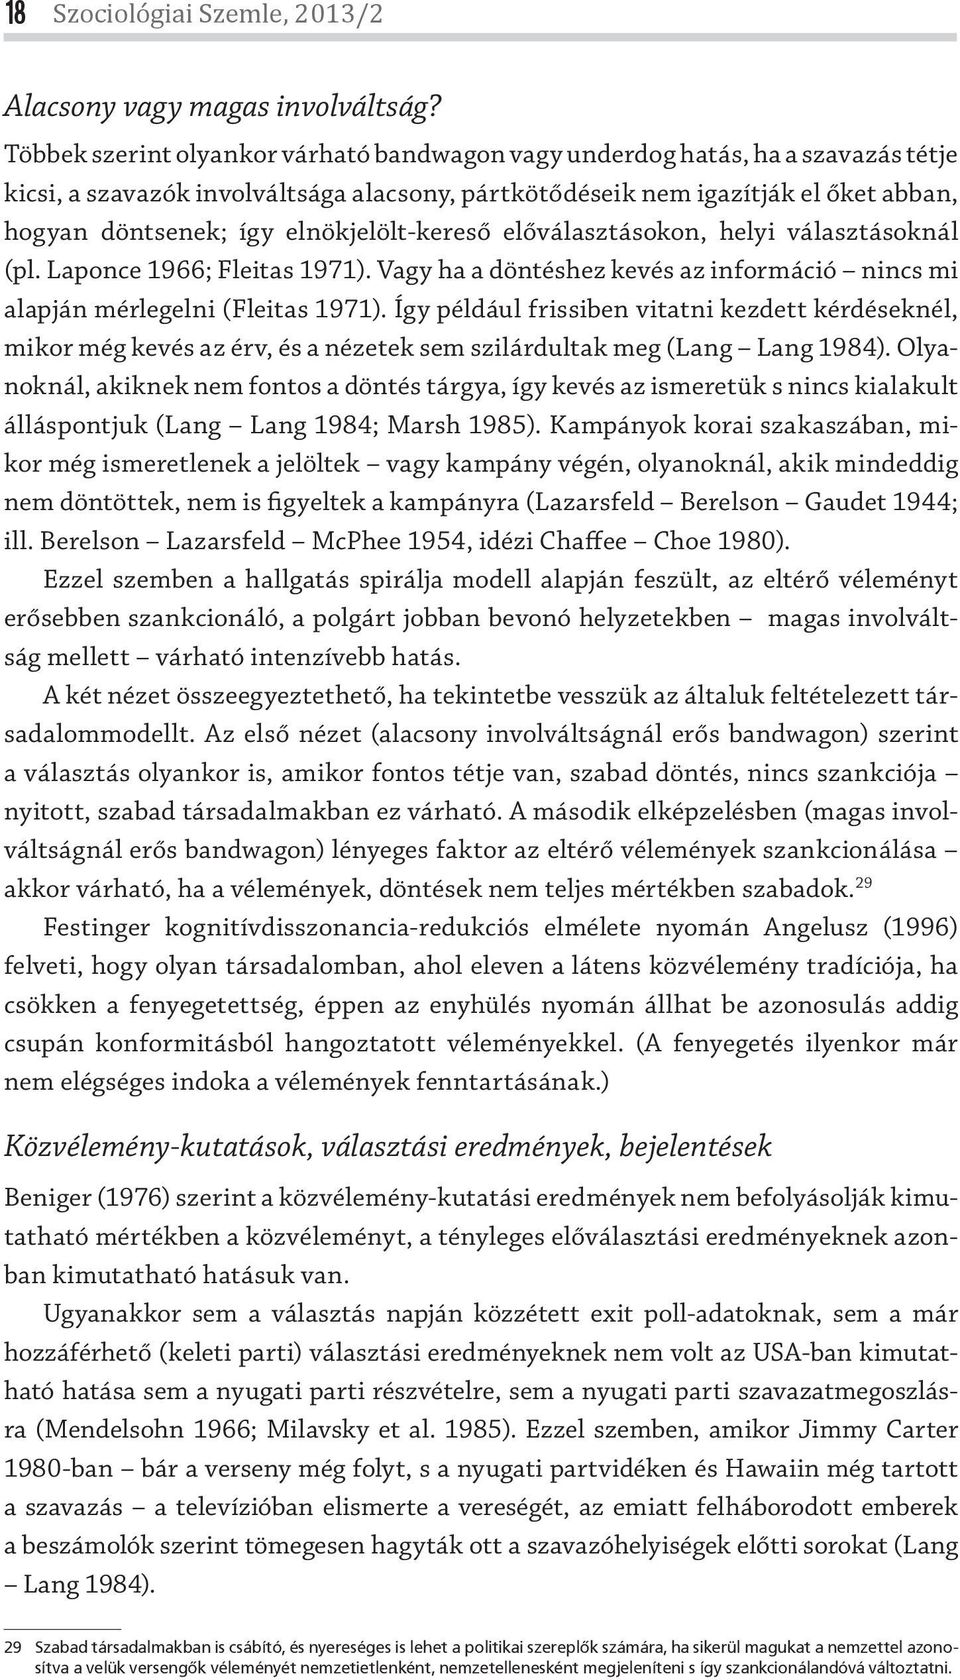 elnökjelölt-kereső előválasztásokon, helyi választásoknál (pl. Laponce 1966; Fleitas 1971). Vagy ha a döntéshez kevés az információ nincs mi alapján mérlegelni (Fleitas 1971).